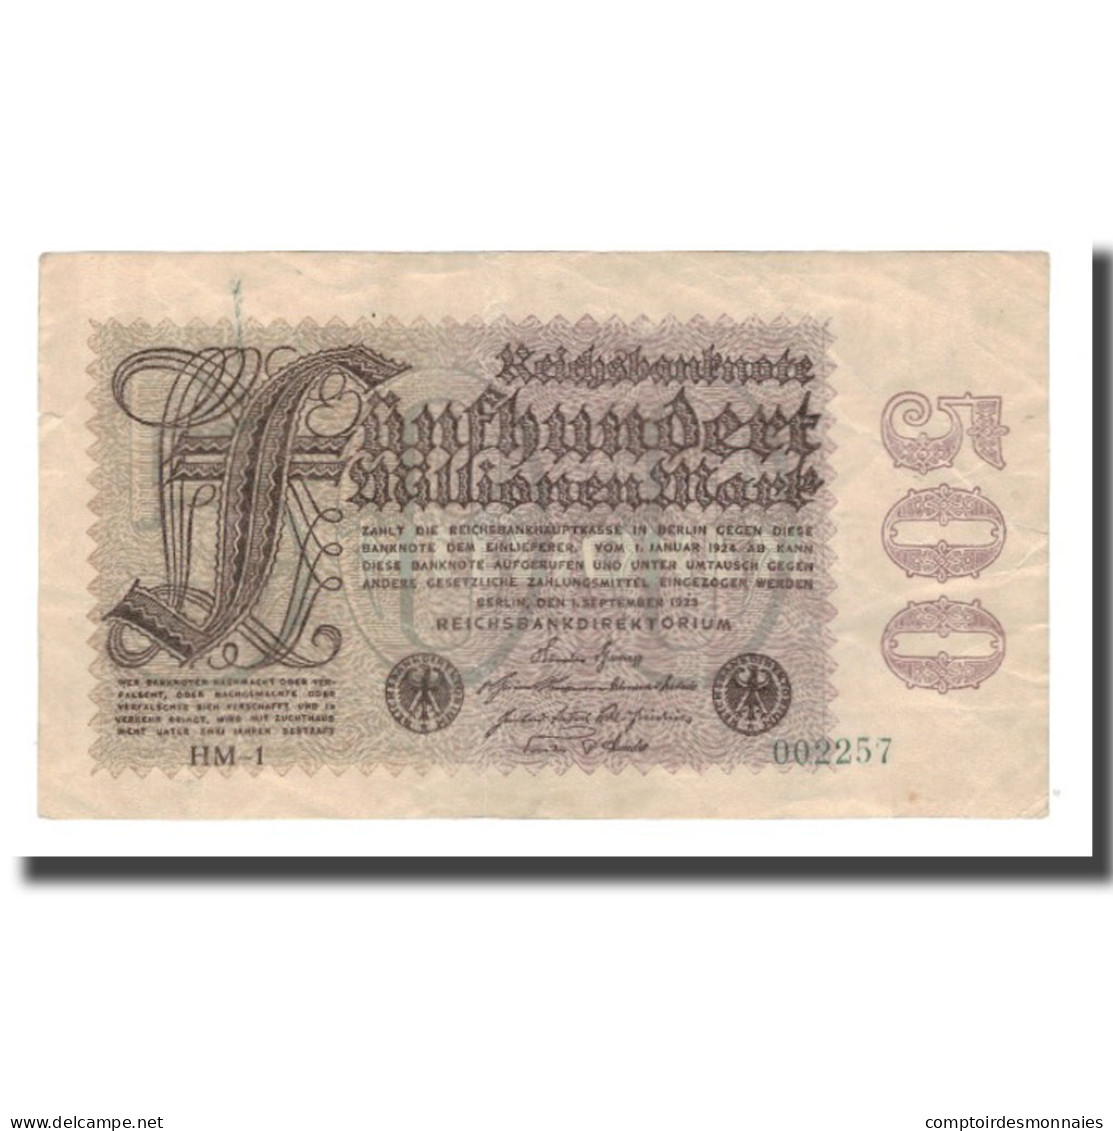 Billet, Allemagne, 500 Millionen Mark, 1923, 1923-09-01, KM:110a, TTB - 500 Millionen Mark